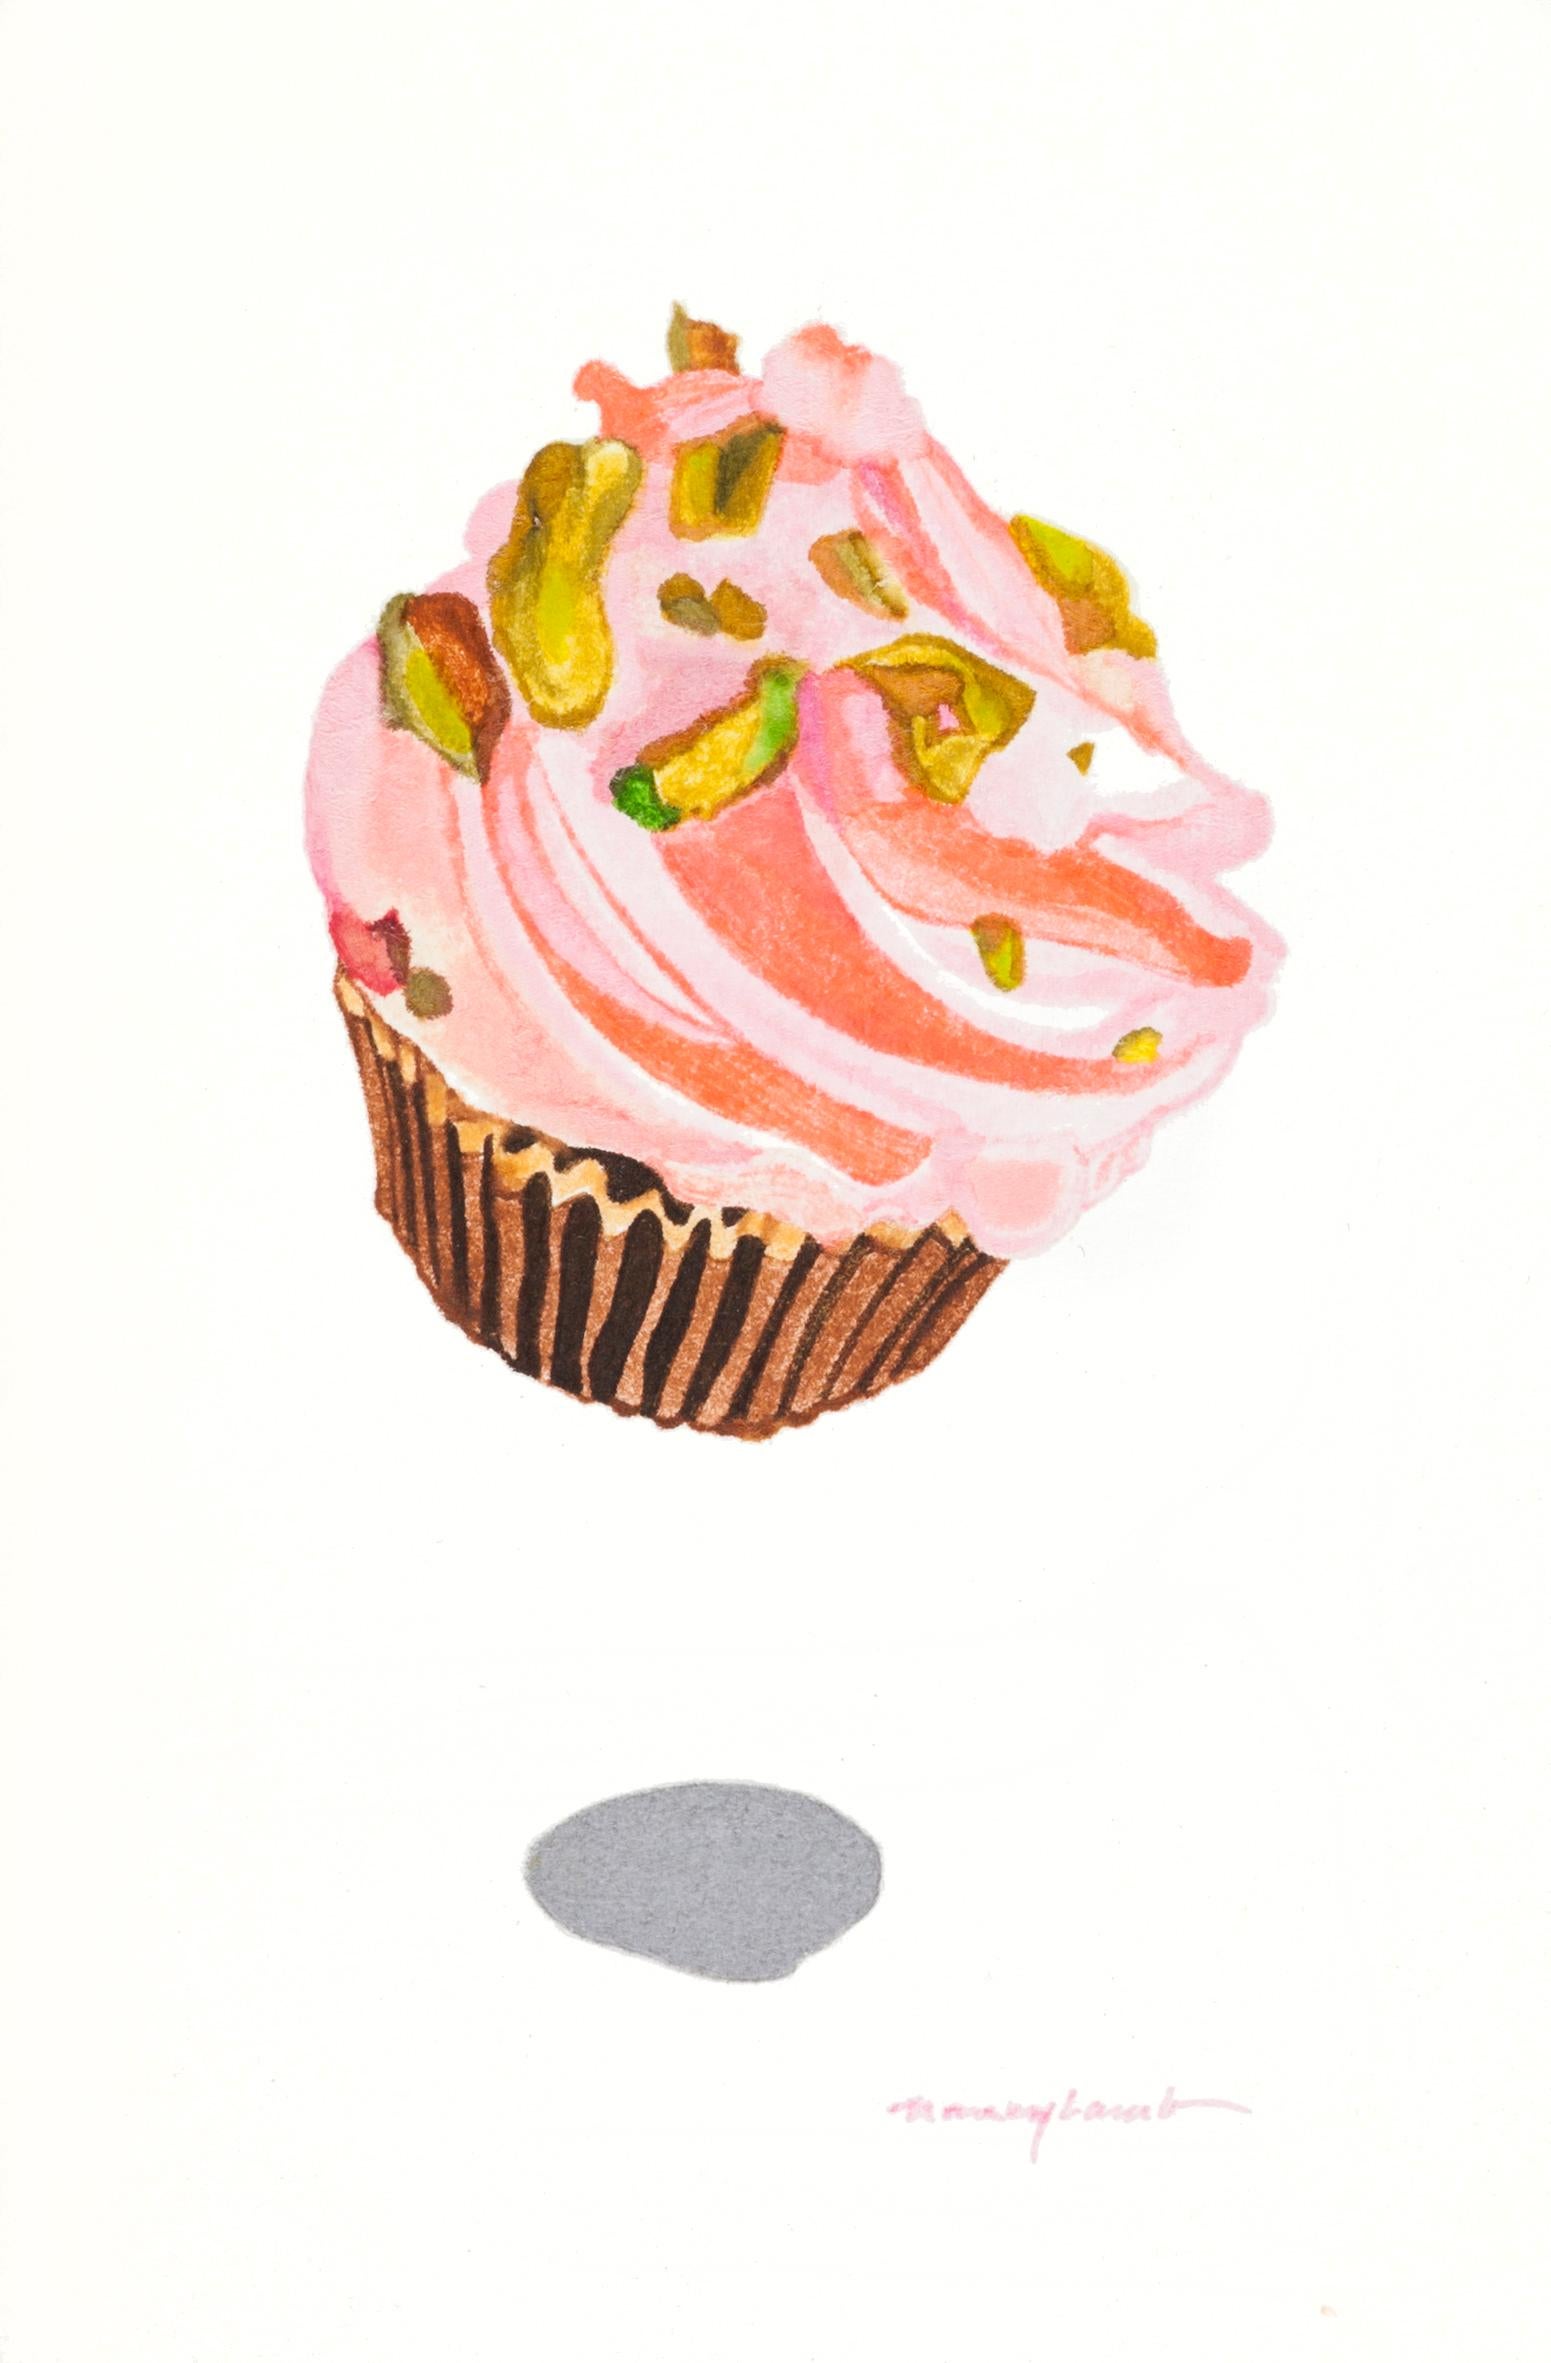 Petite aquarelle contemporaine de gâteau à dessert en forme de coupe de fraise rose avec pistachios